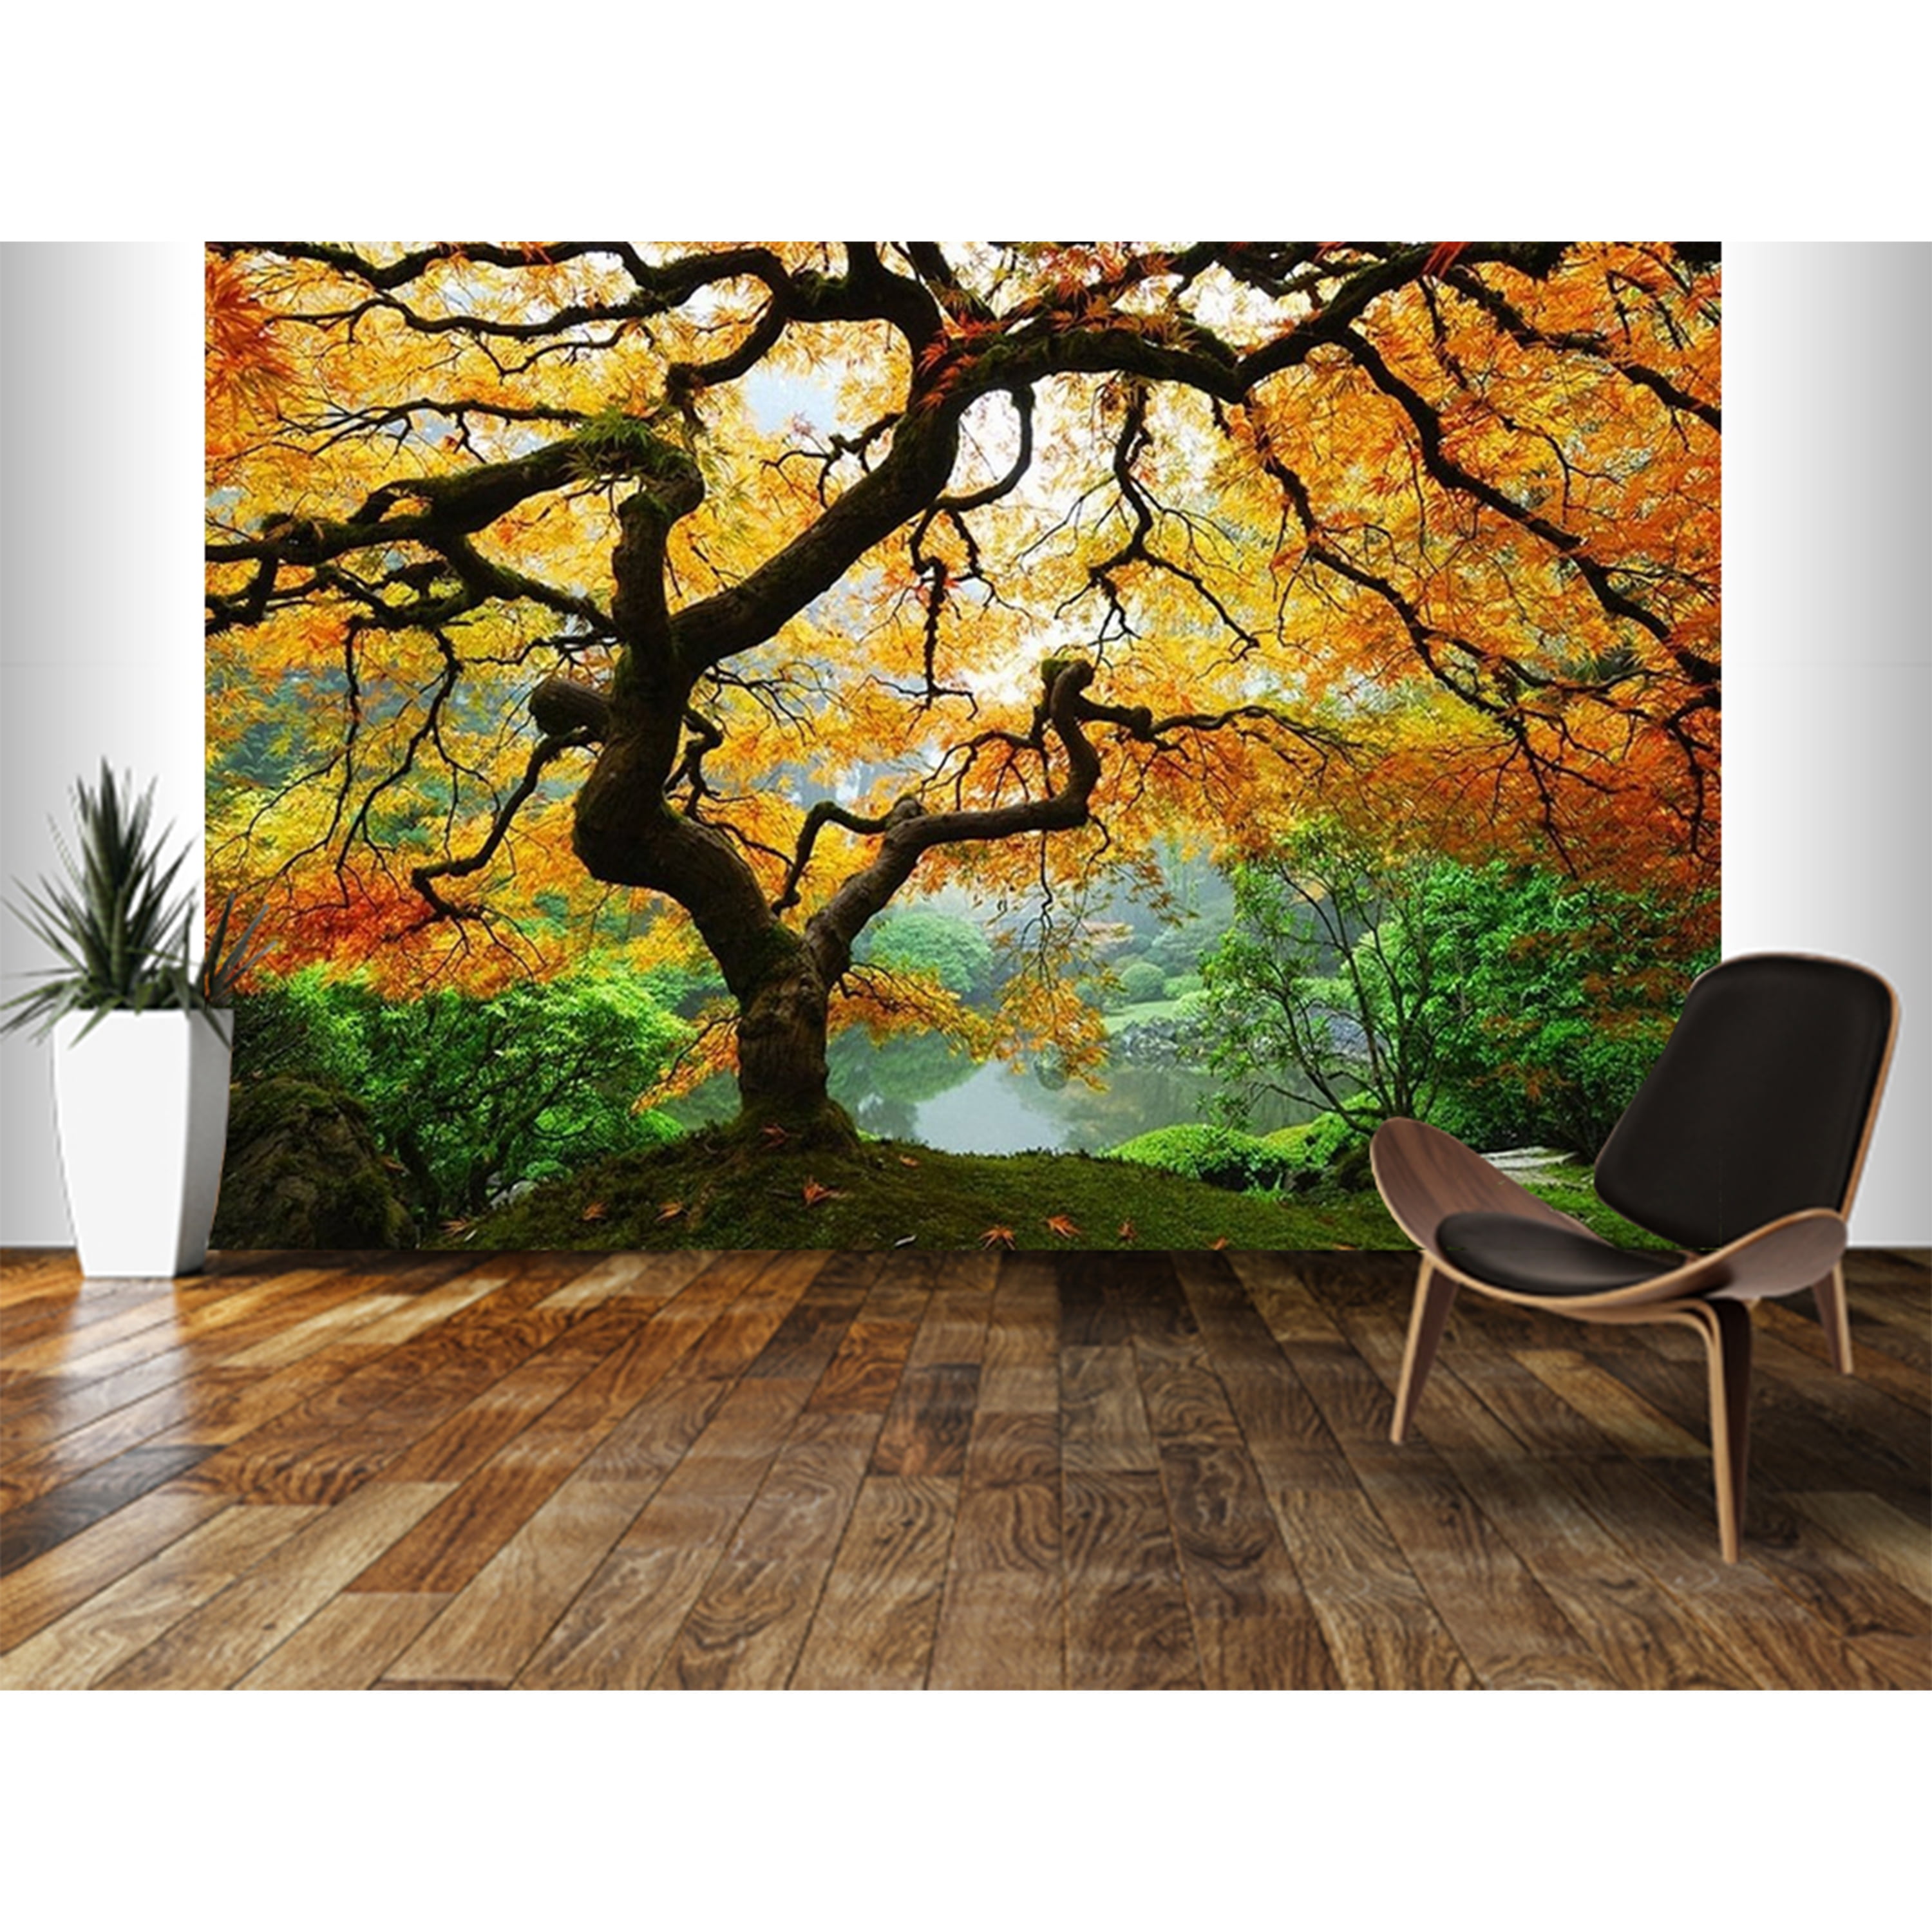 Startonight Mural Wall Art Maple Tree, Illuminated Landscape Large